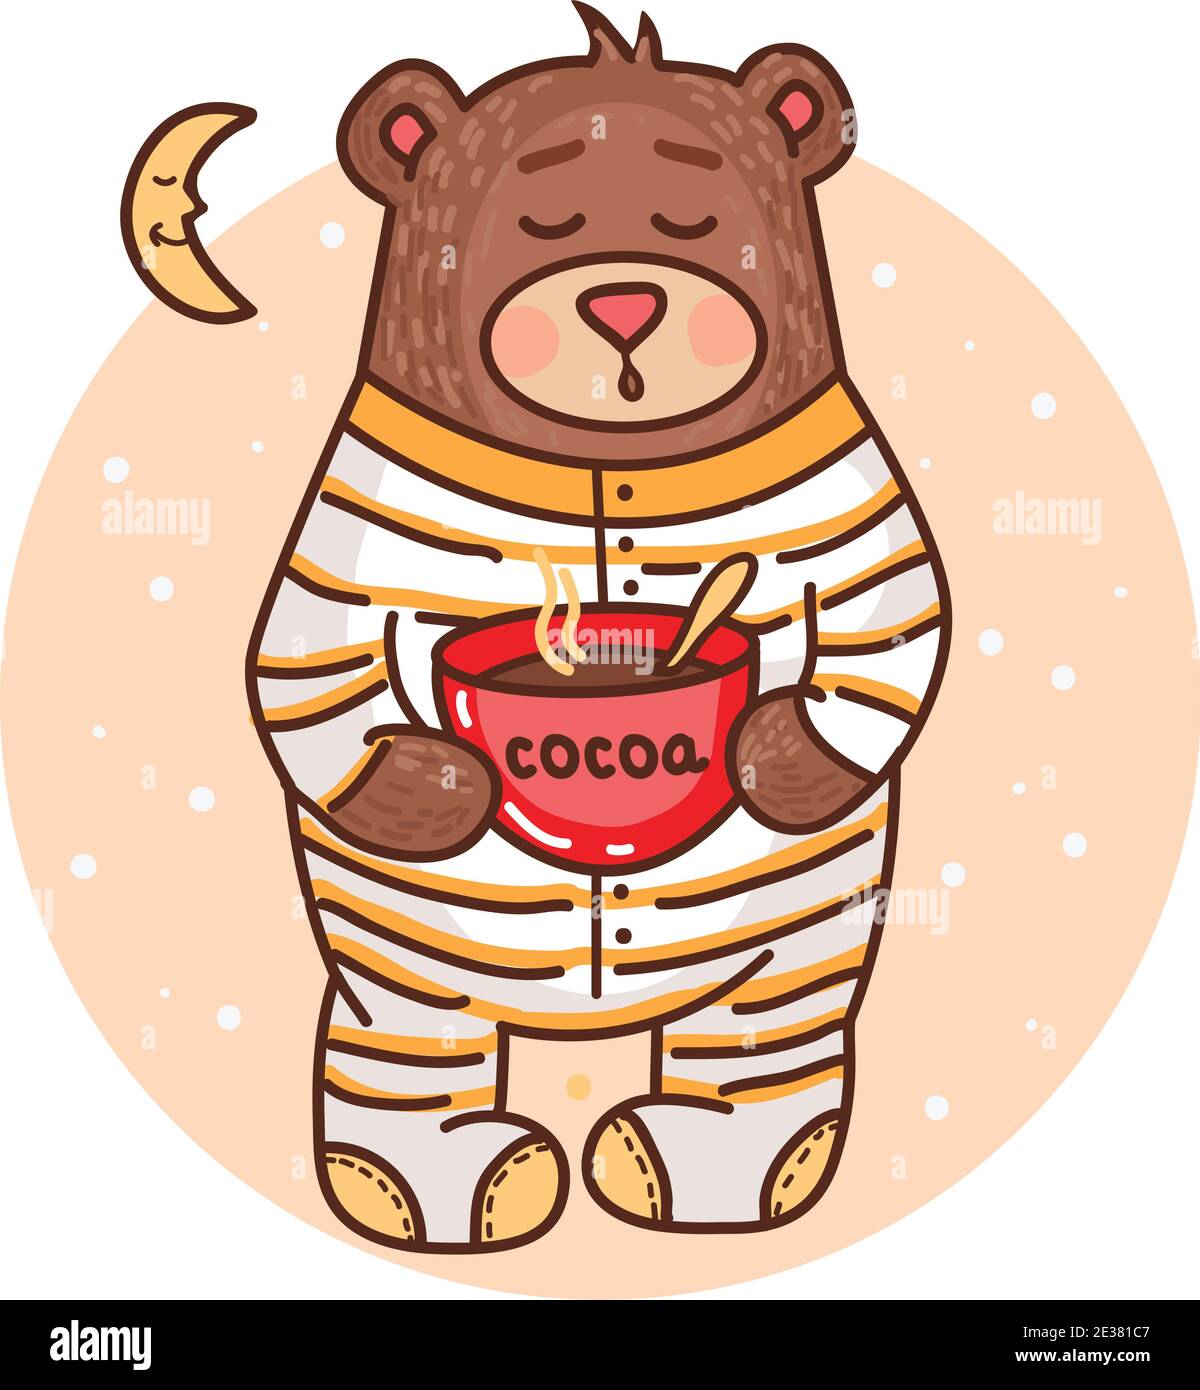 Illustrazione vettoriale con carino orsacchiotto che beve cacao e desiderato buona notte Illustrazione Vettoriale